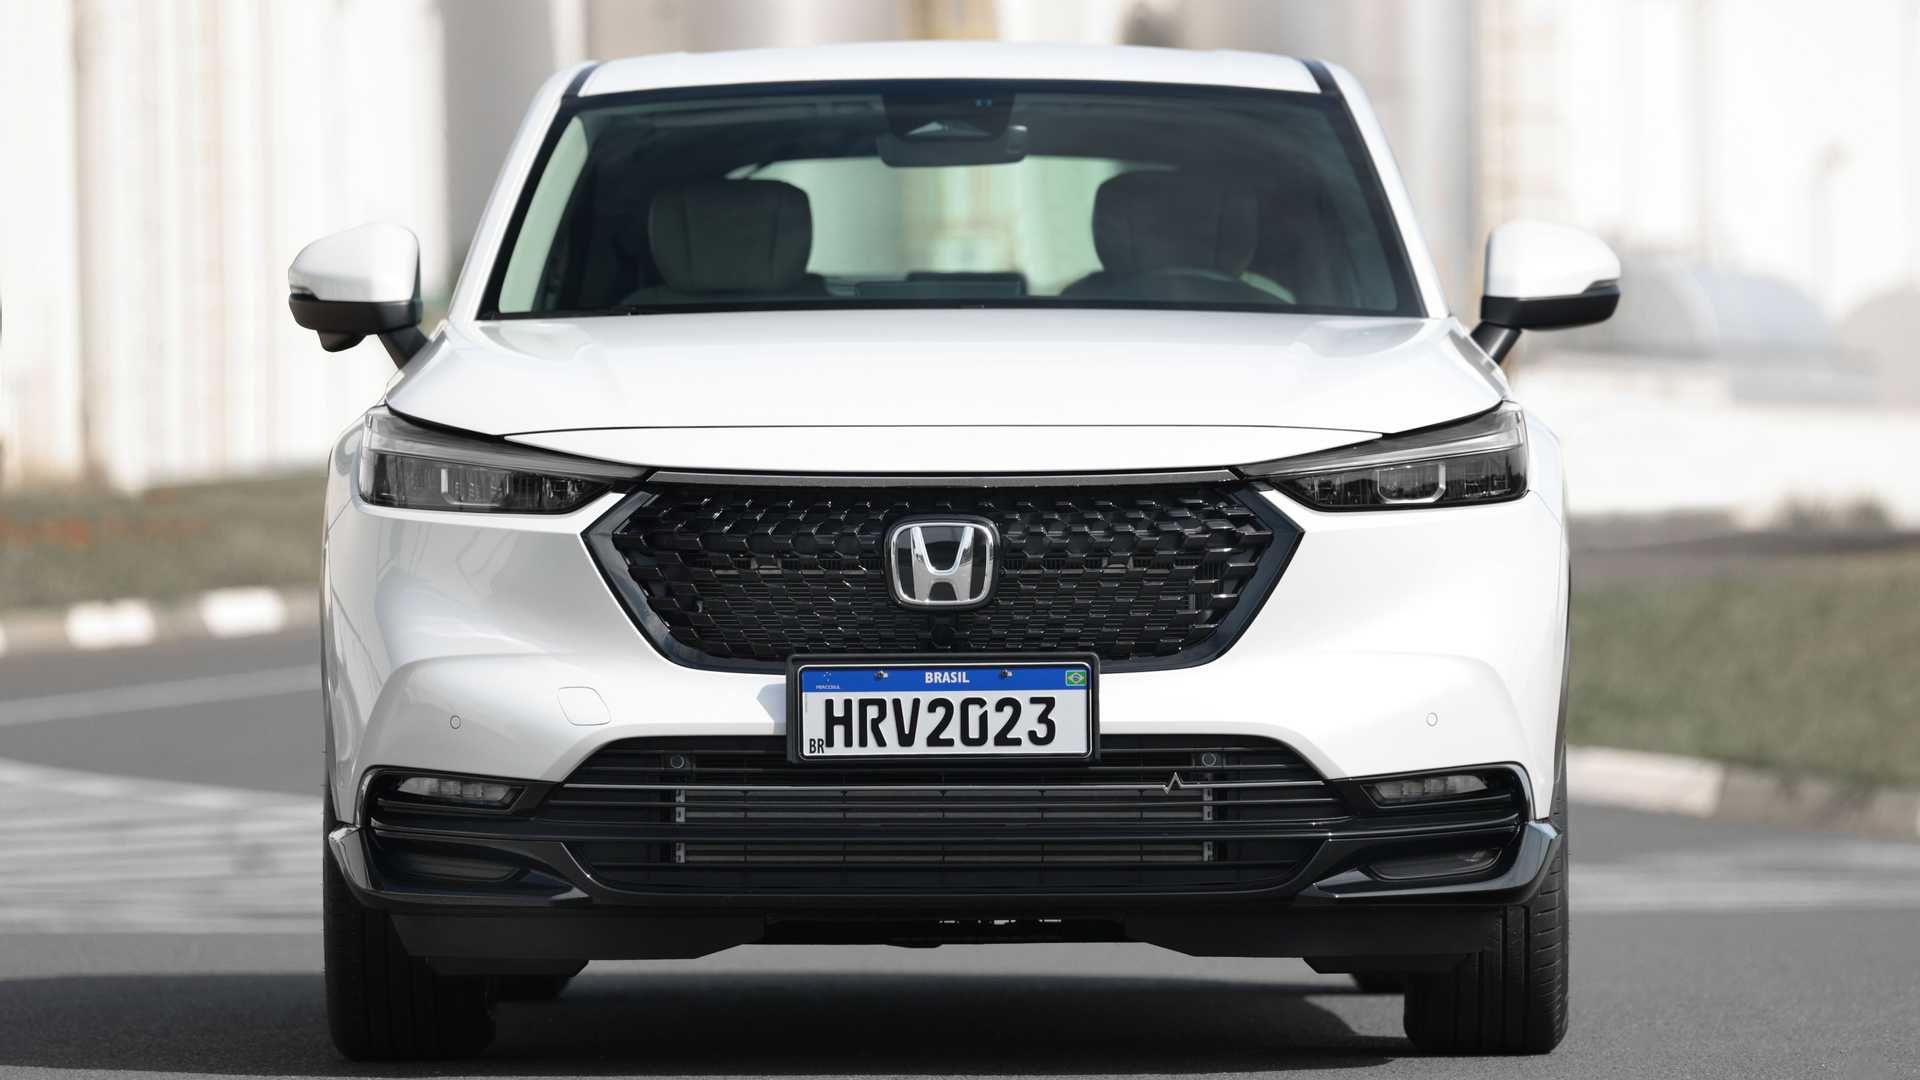 Honda revela el nuevo HRV que llegará a la Argentina Parabrisas